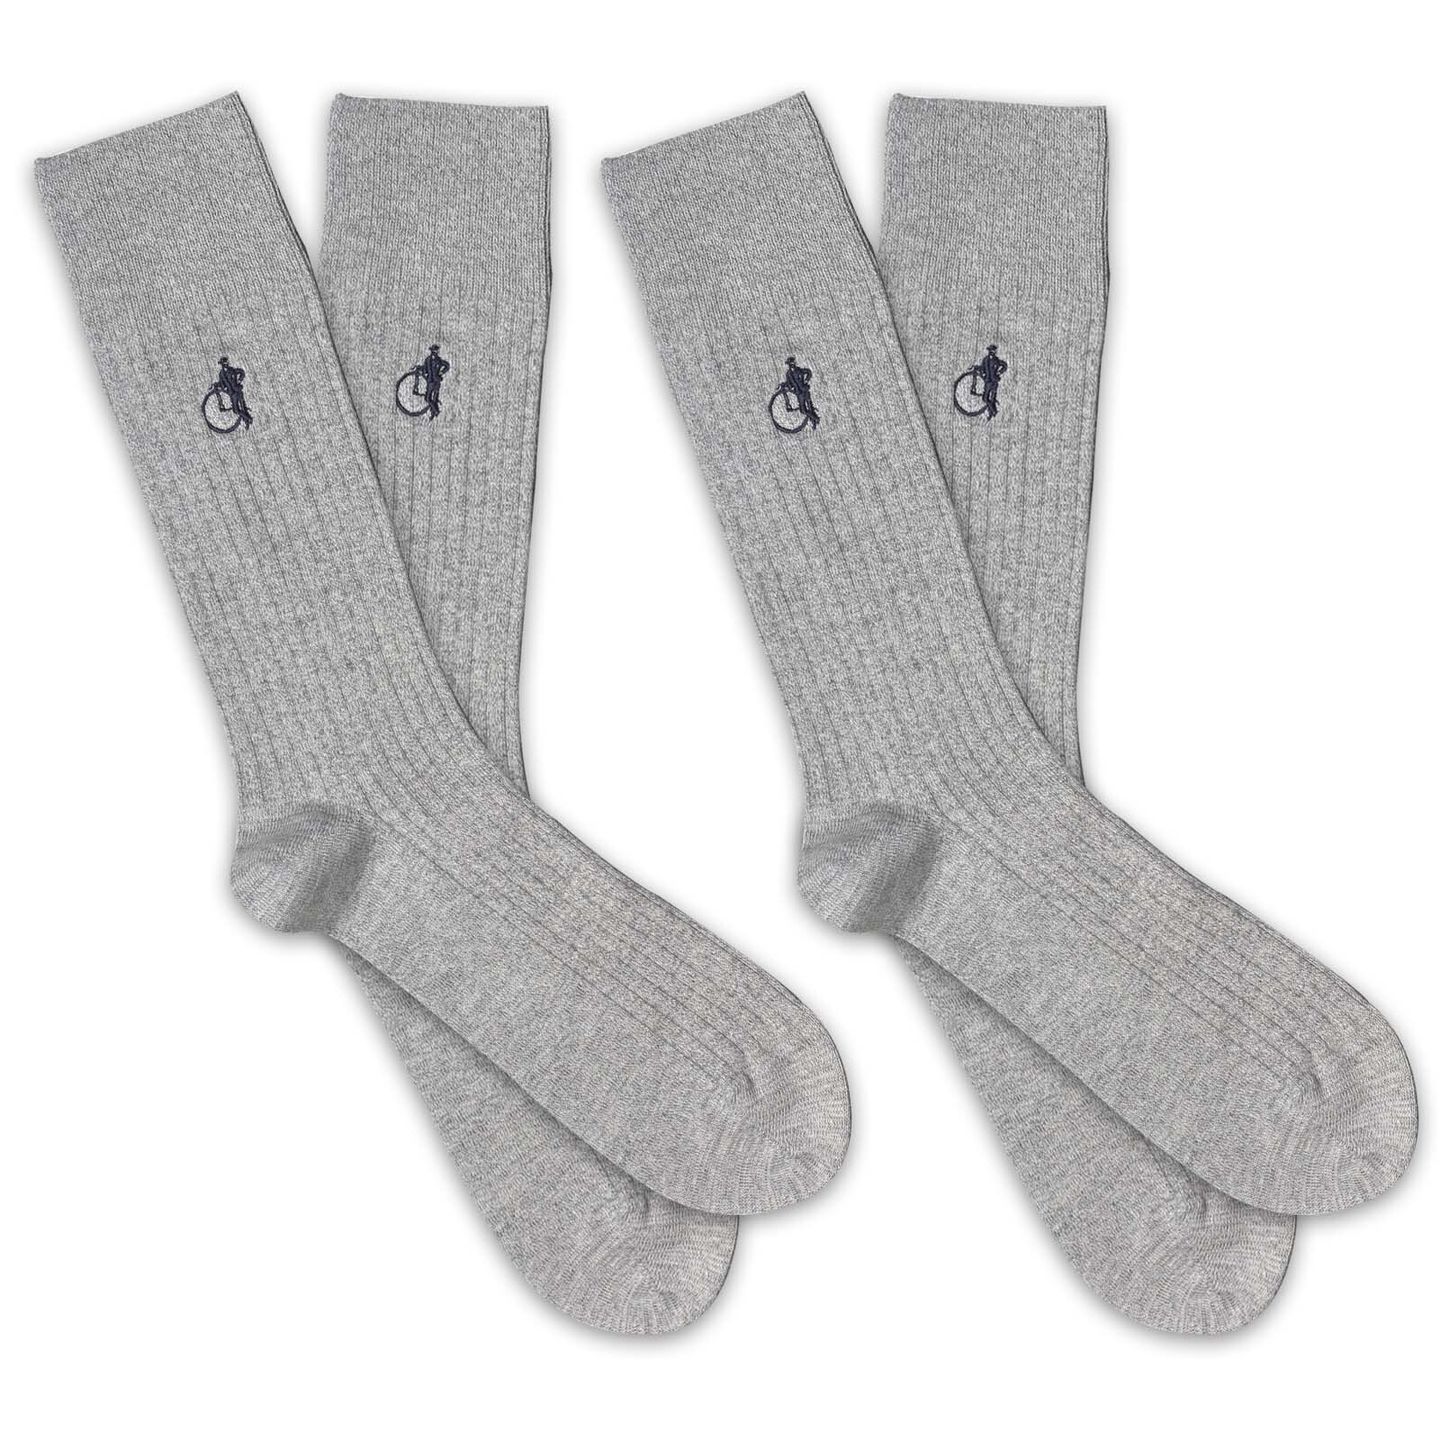 2 pairs of earl grey marl socks